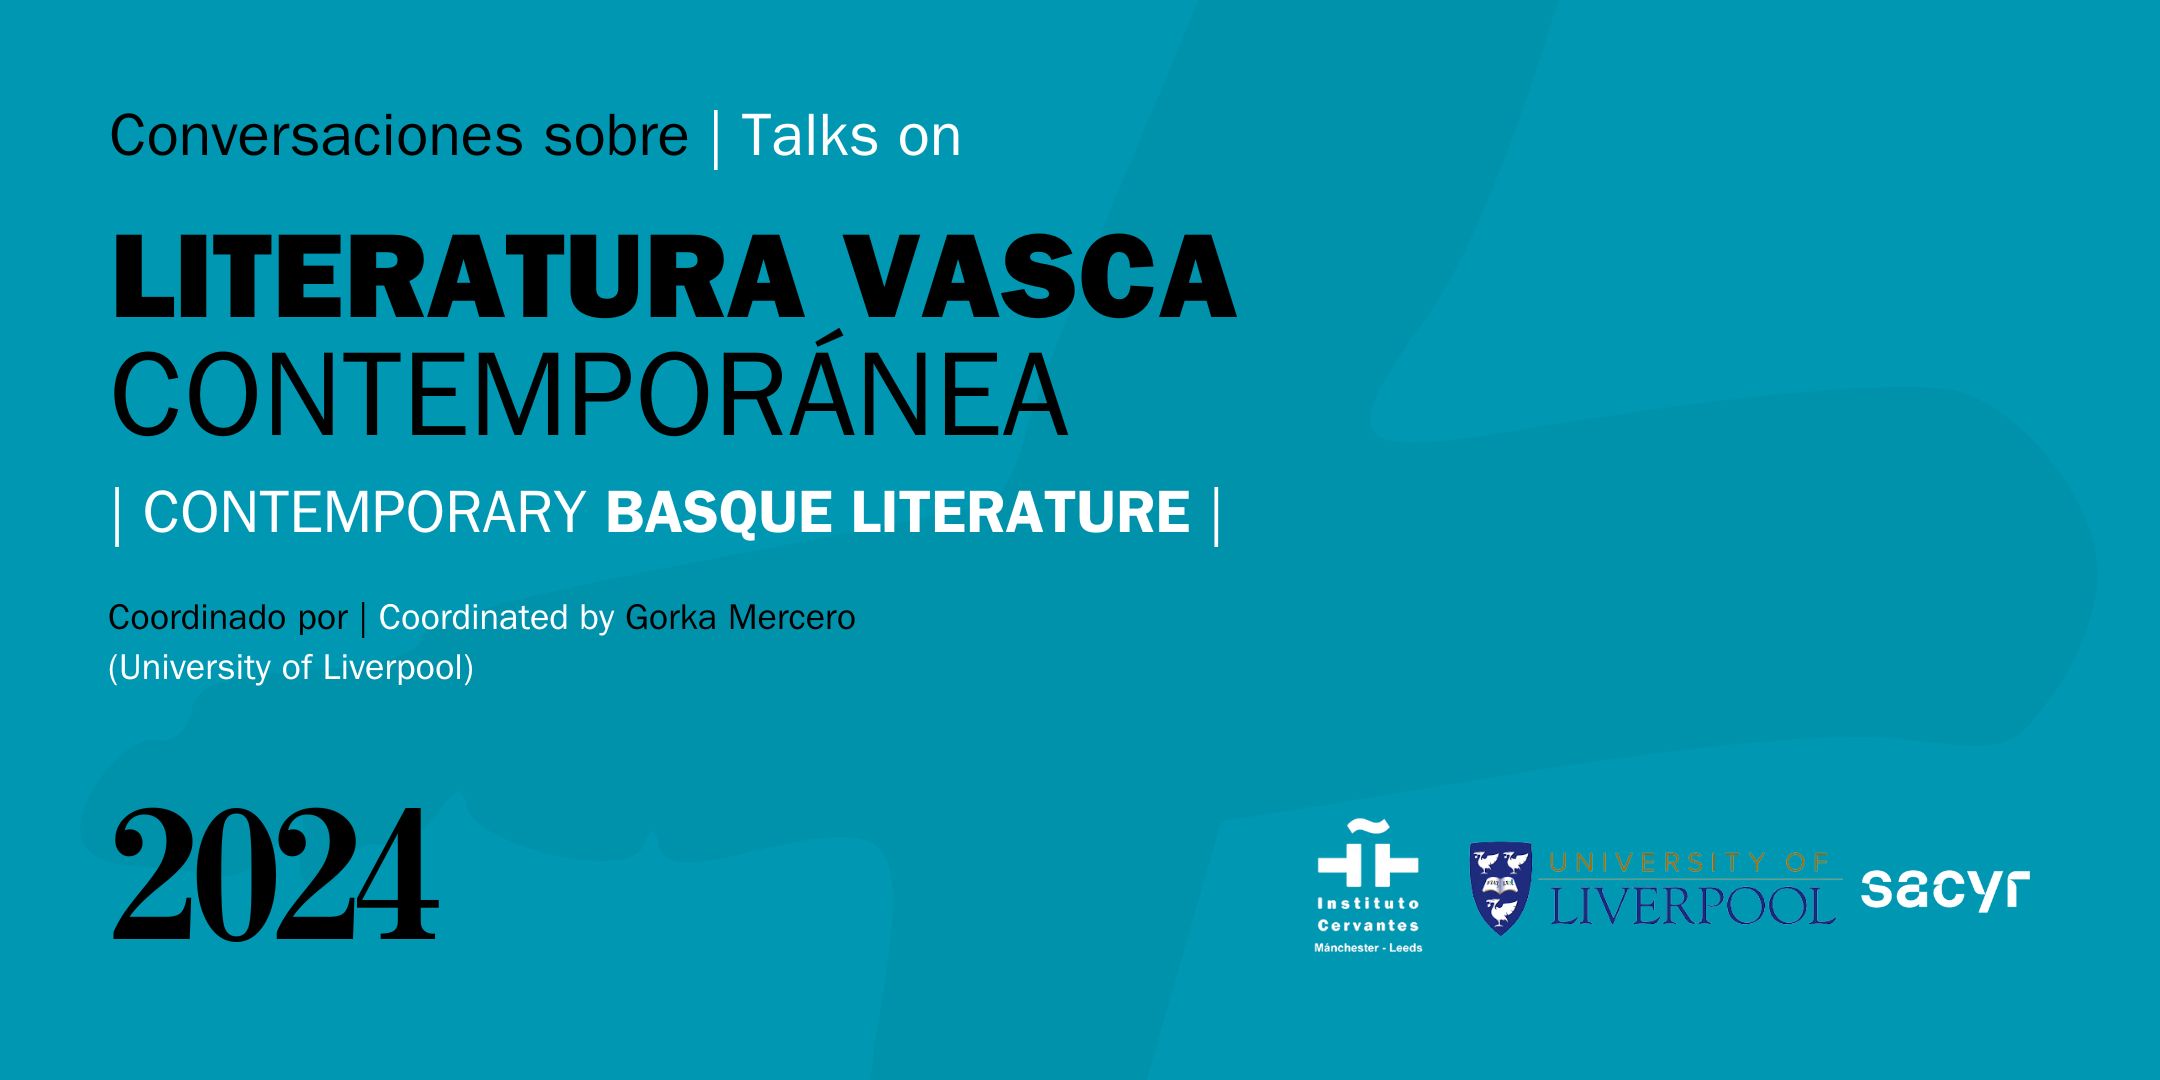 Conversaciones sobre literatura vasca contemporánea